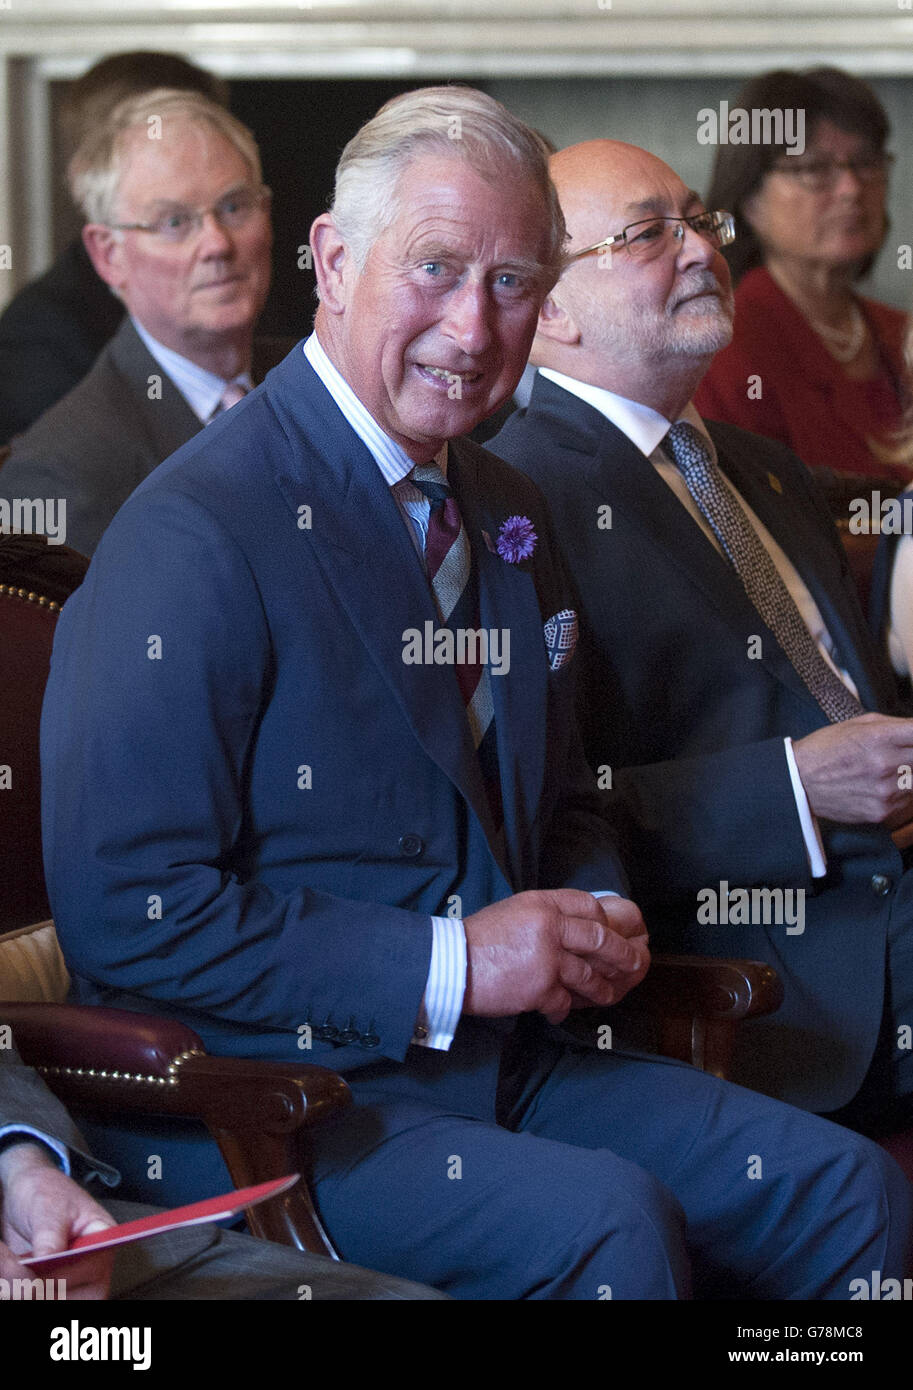 Il Principe del Galles incontra musicisti mentre frequenta un recital per celebrare il 40° anniversario della Scottish Chamber Orchestra al Palace of Holyroodhouse di Edimburgo, durante la sua visita annuale in Scozia. Foto Stock